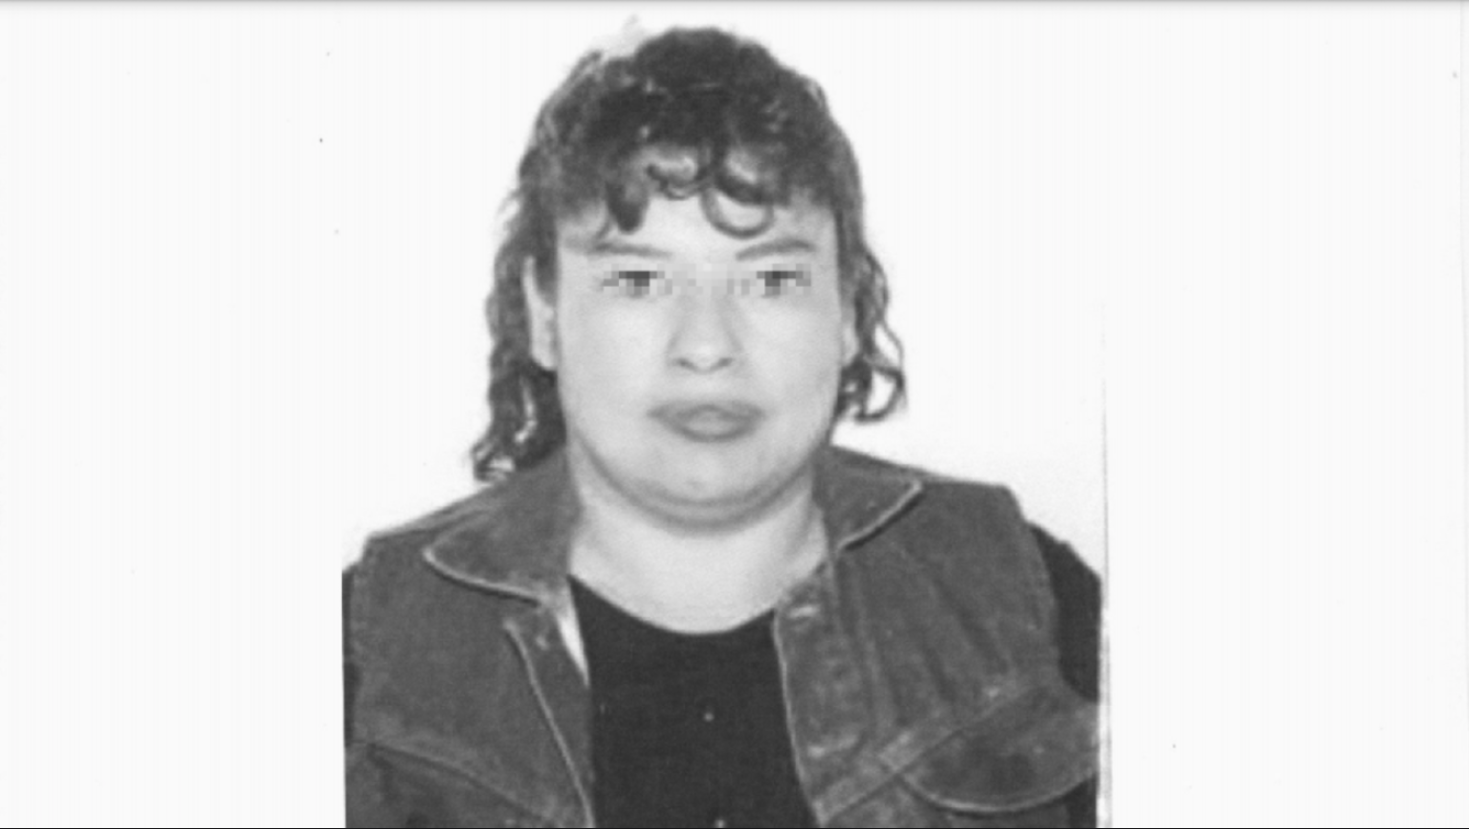 Norma Jiménez era una madre trabajadora, tenía alrededor de 41 años cuando desapareció en 2011, Andrés confesó, en su primera audiencia en los juzgados del penal de Barrientos, en Tlalnepantla, que ella había sido una de sus víctimas, fue la que primera que recordó y nombró.